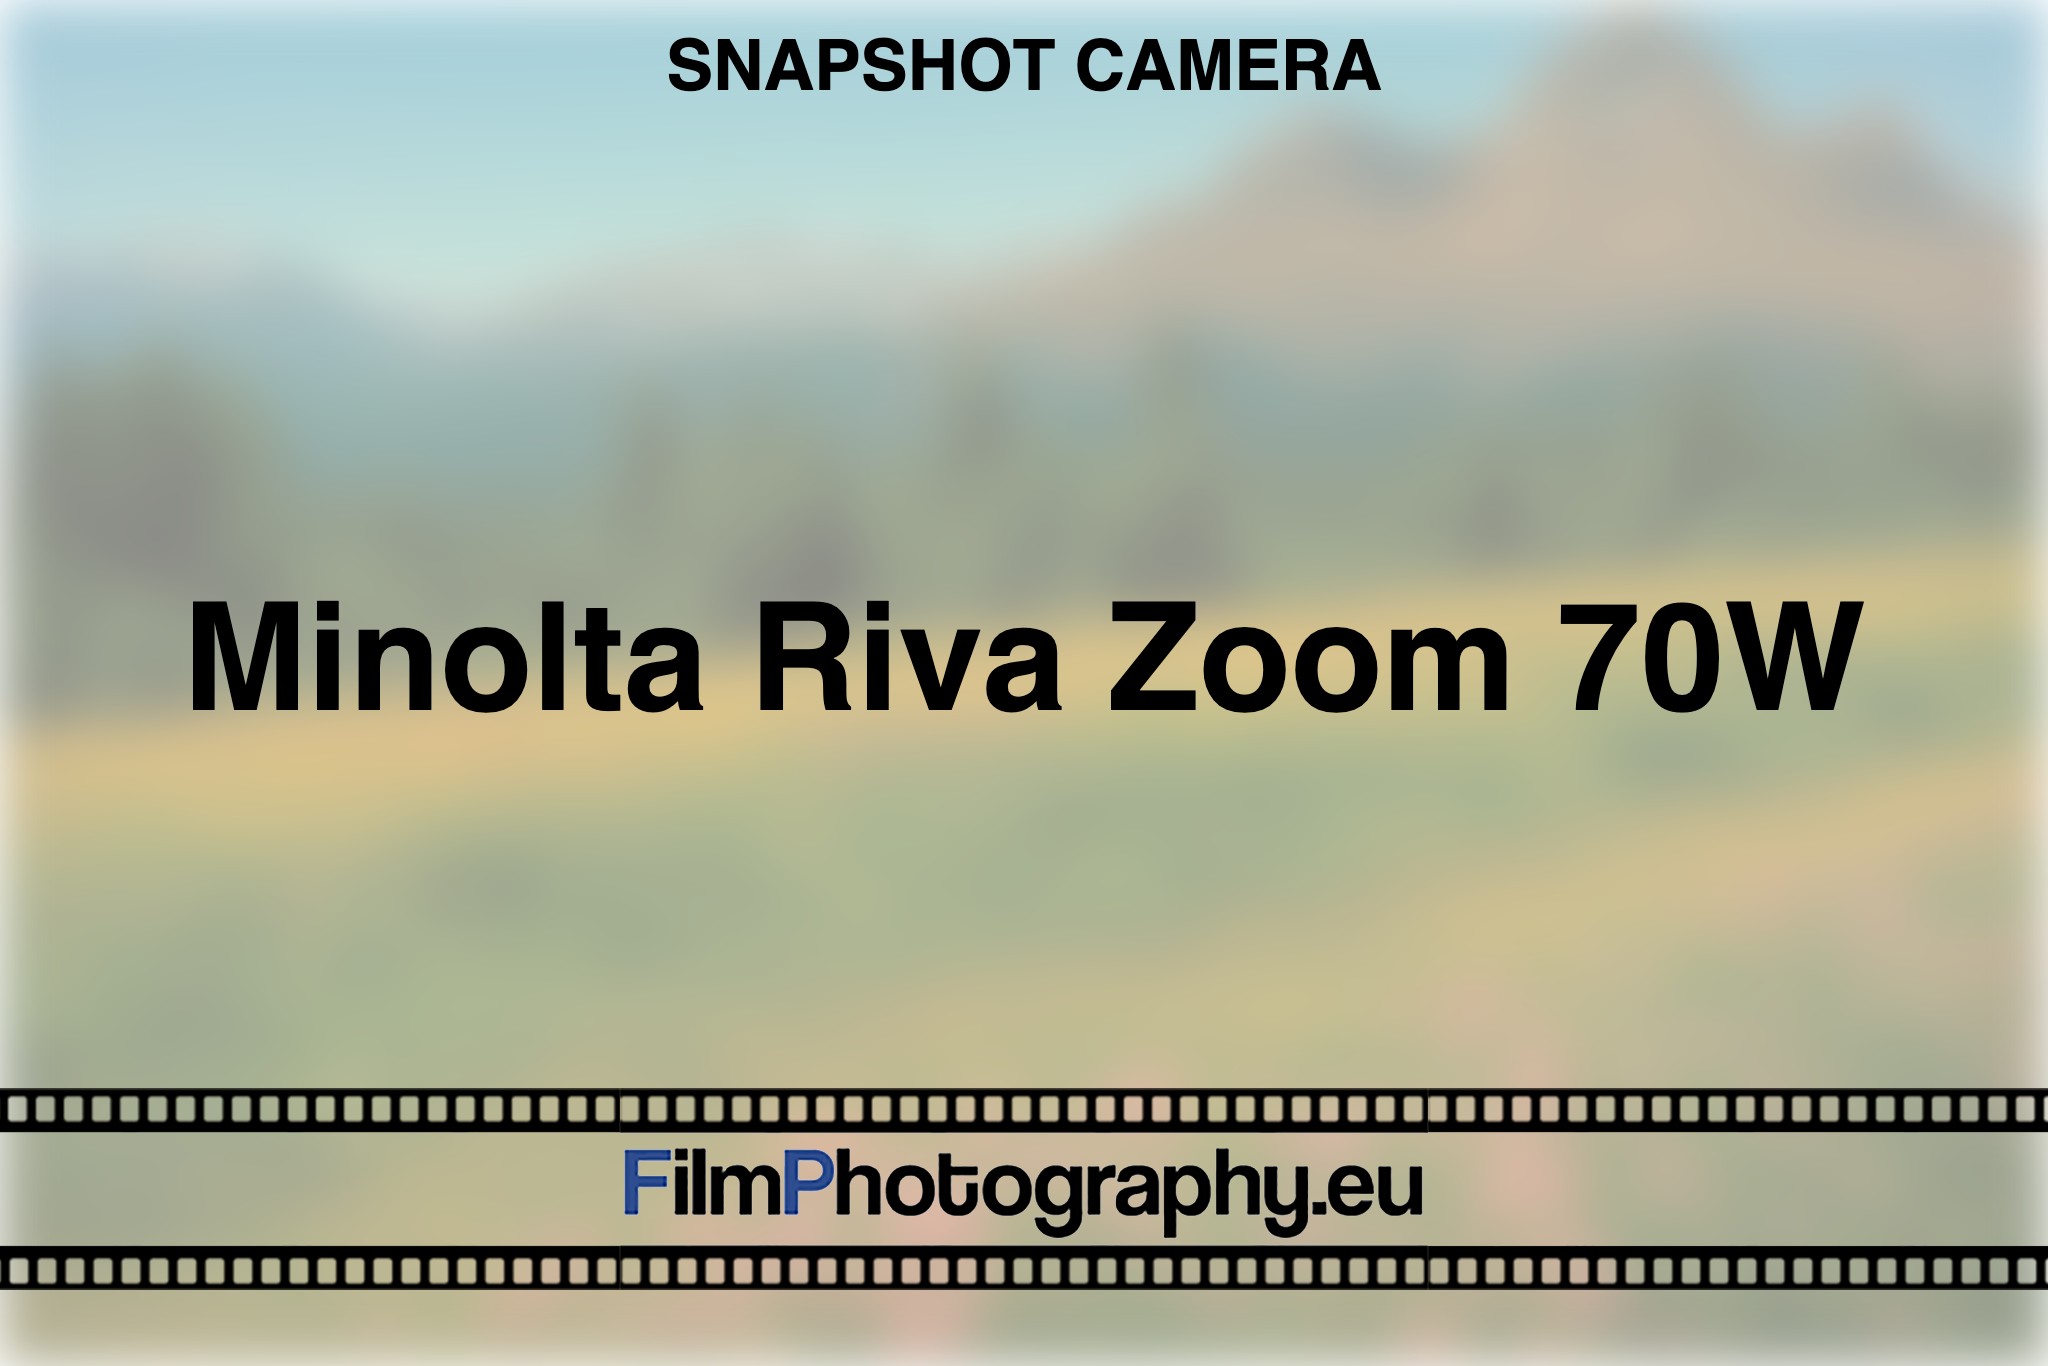 minolta-riva-zoom-70w-snapshot-camera-bnv